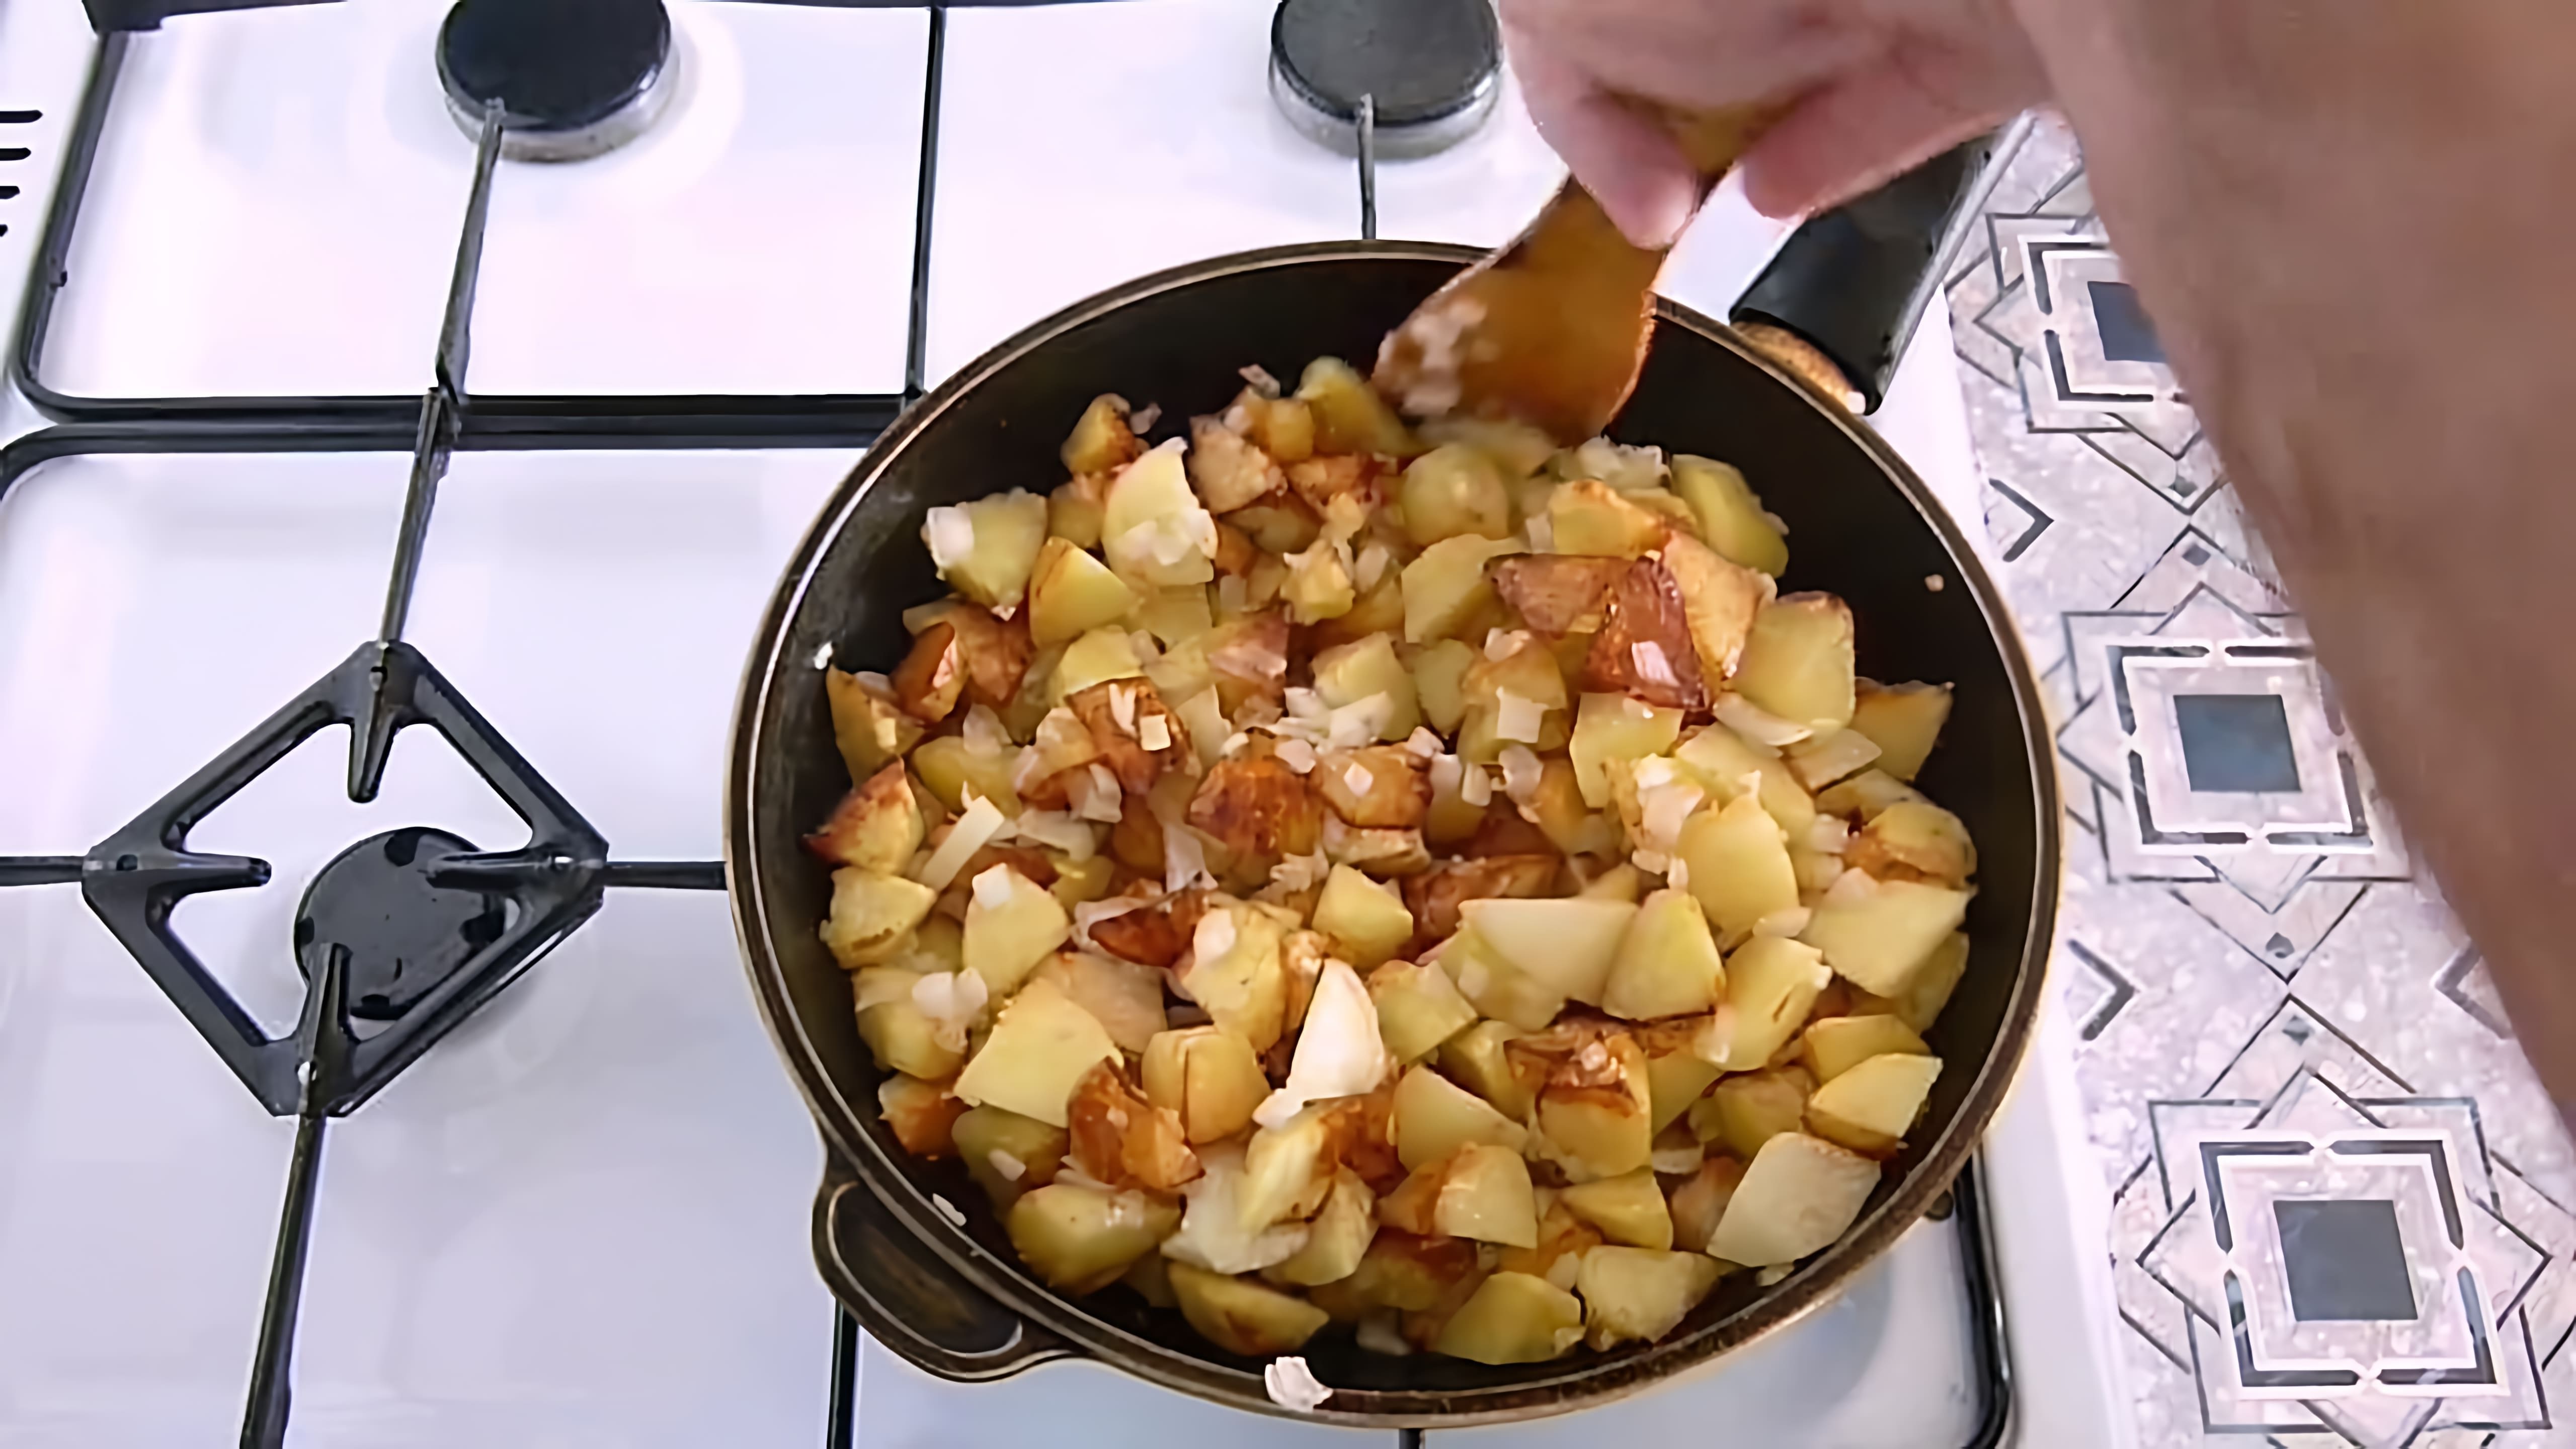 Видео демонстрирует способ жарки картофеля с использованием двух секретов